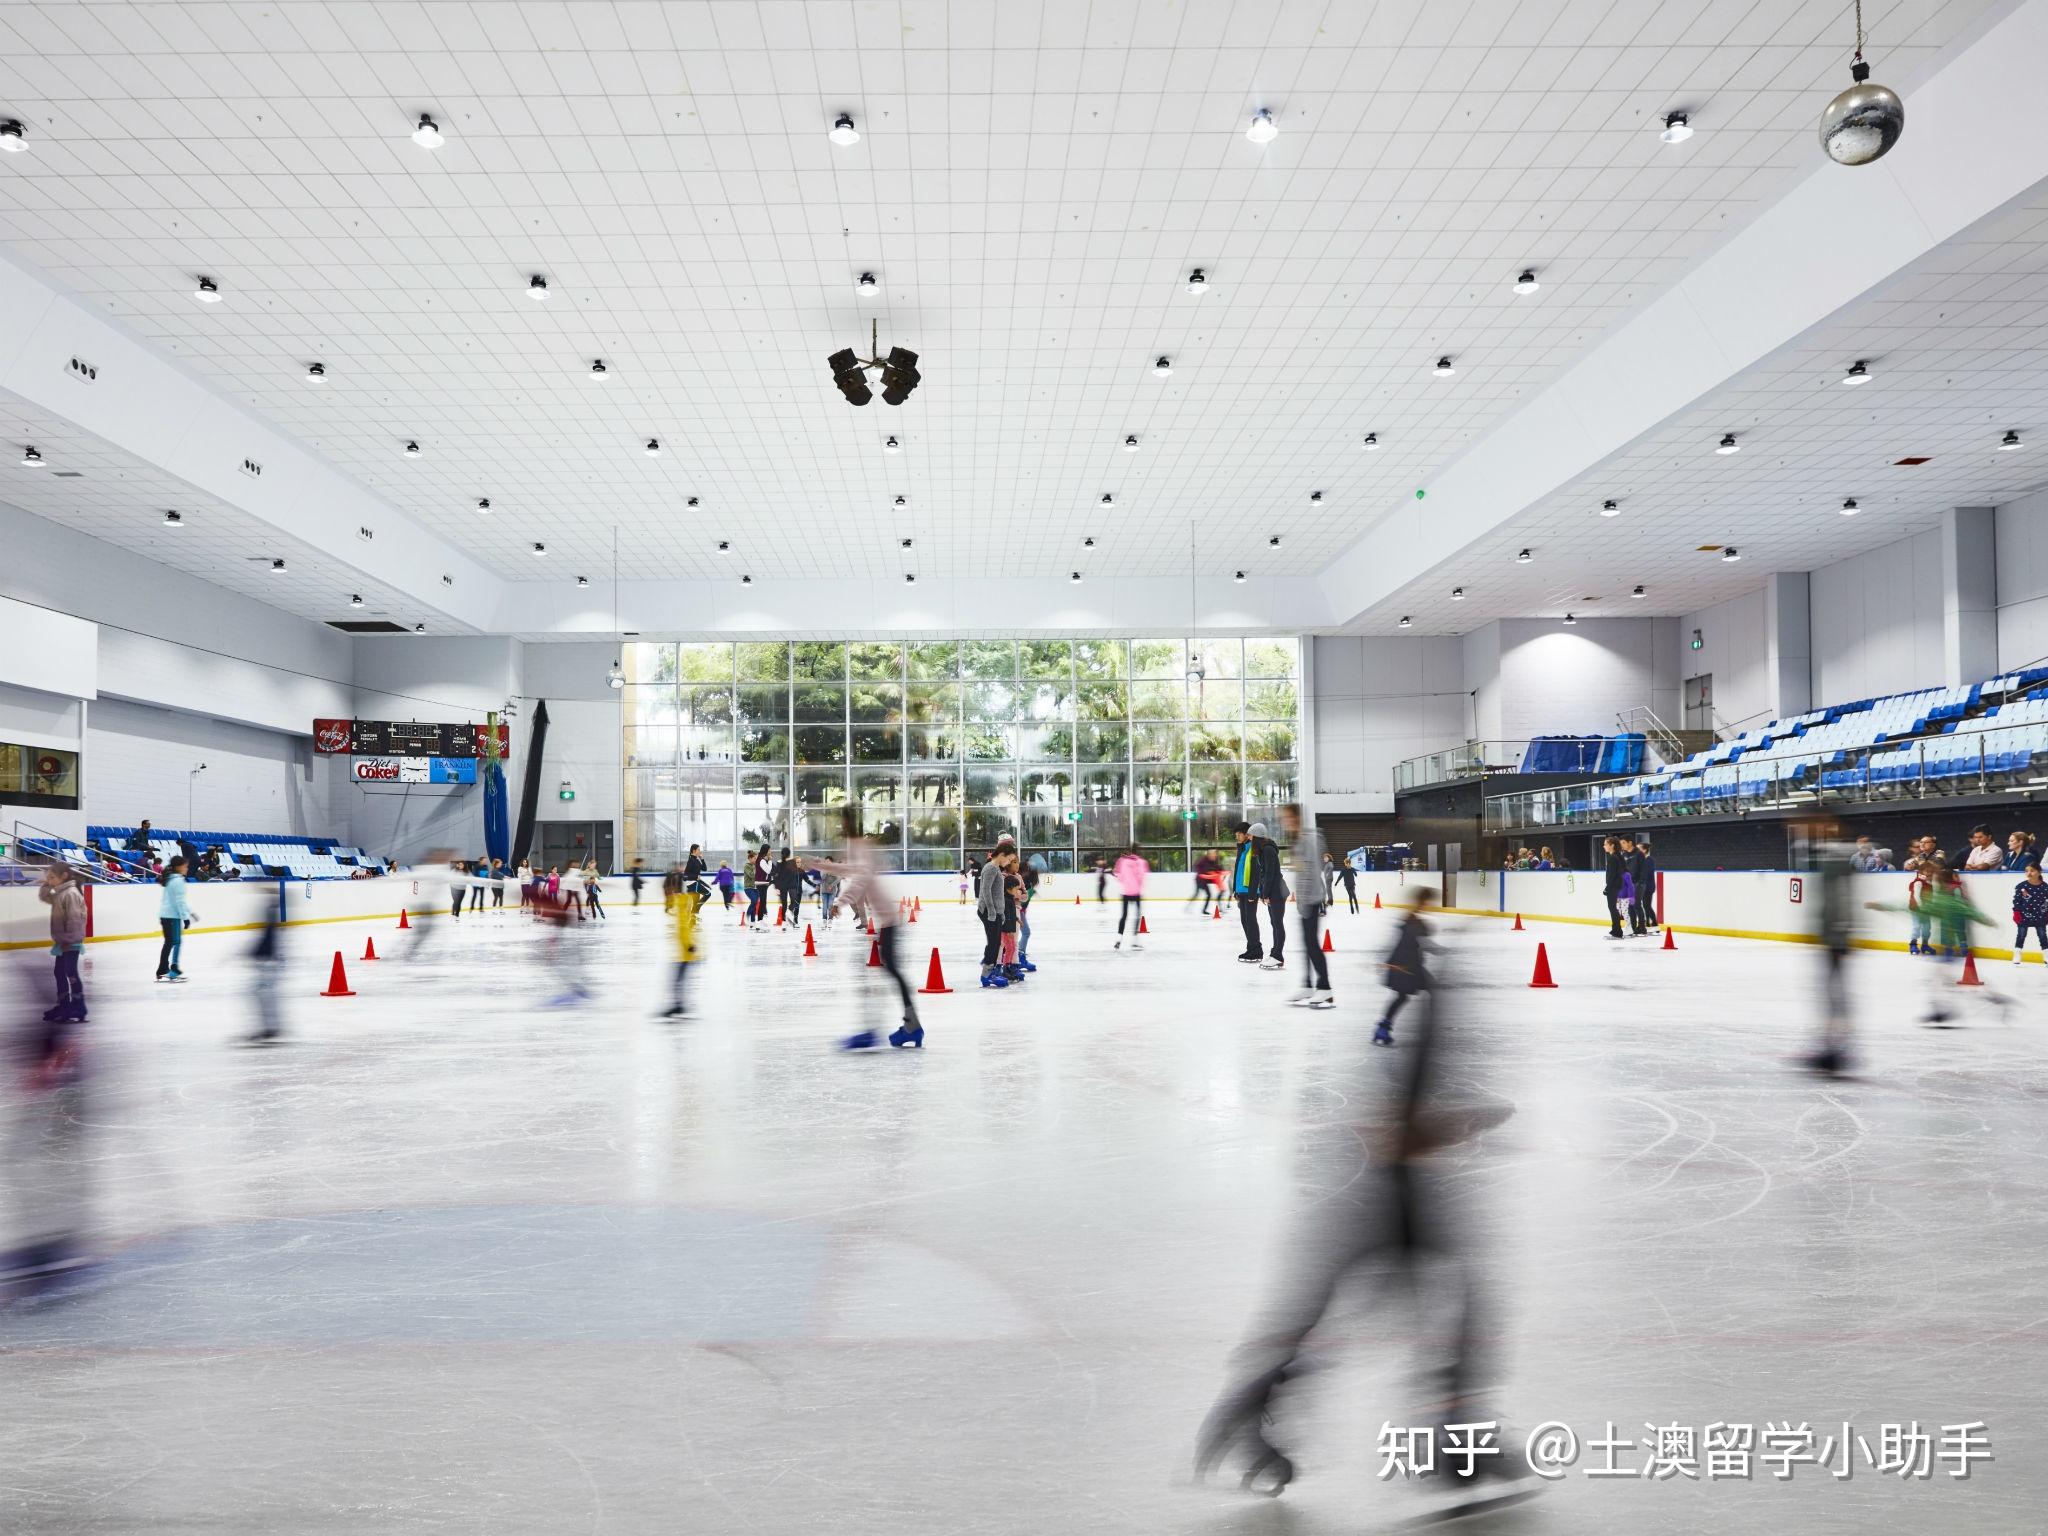 宁波室内滑冰场图片